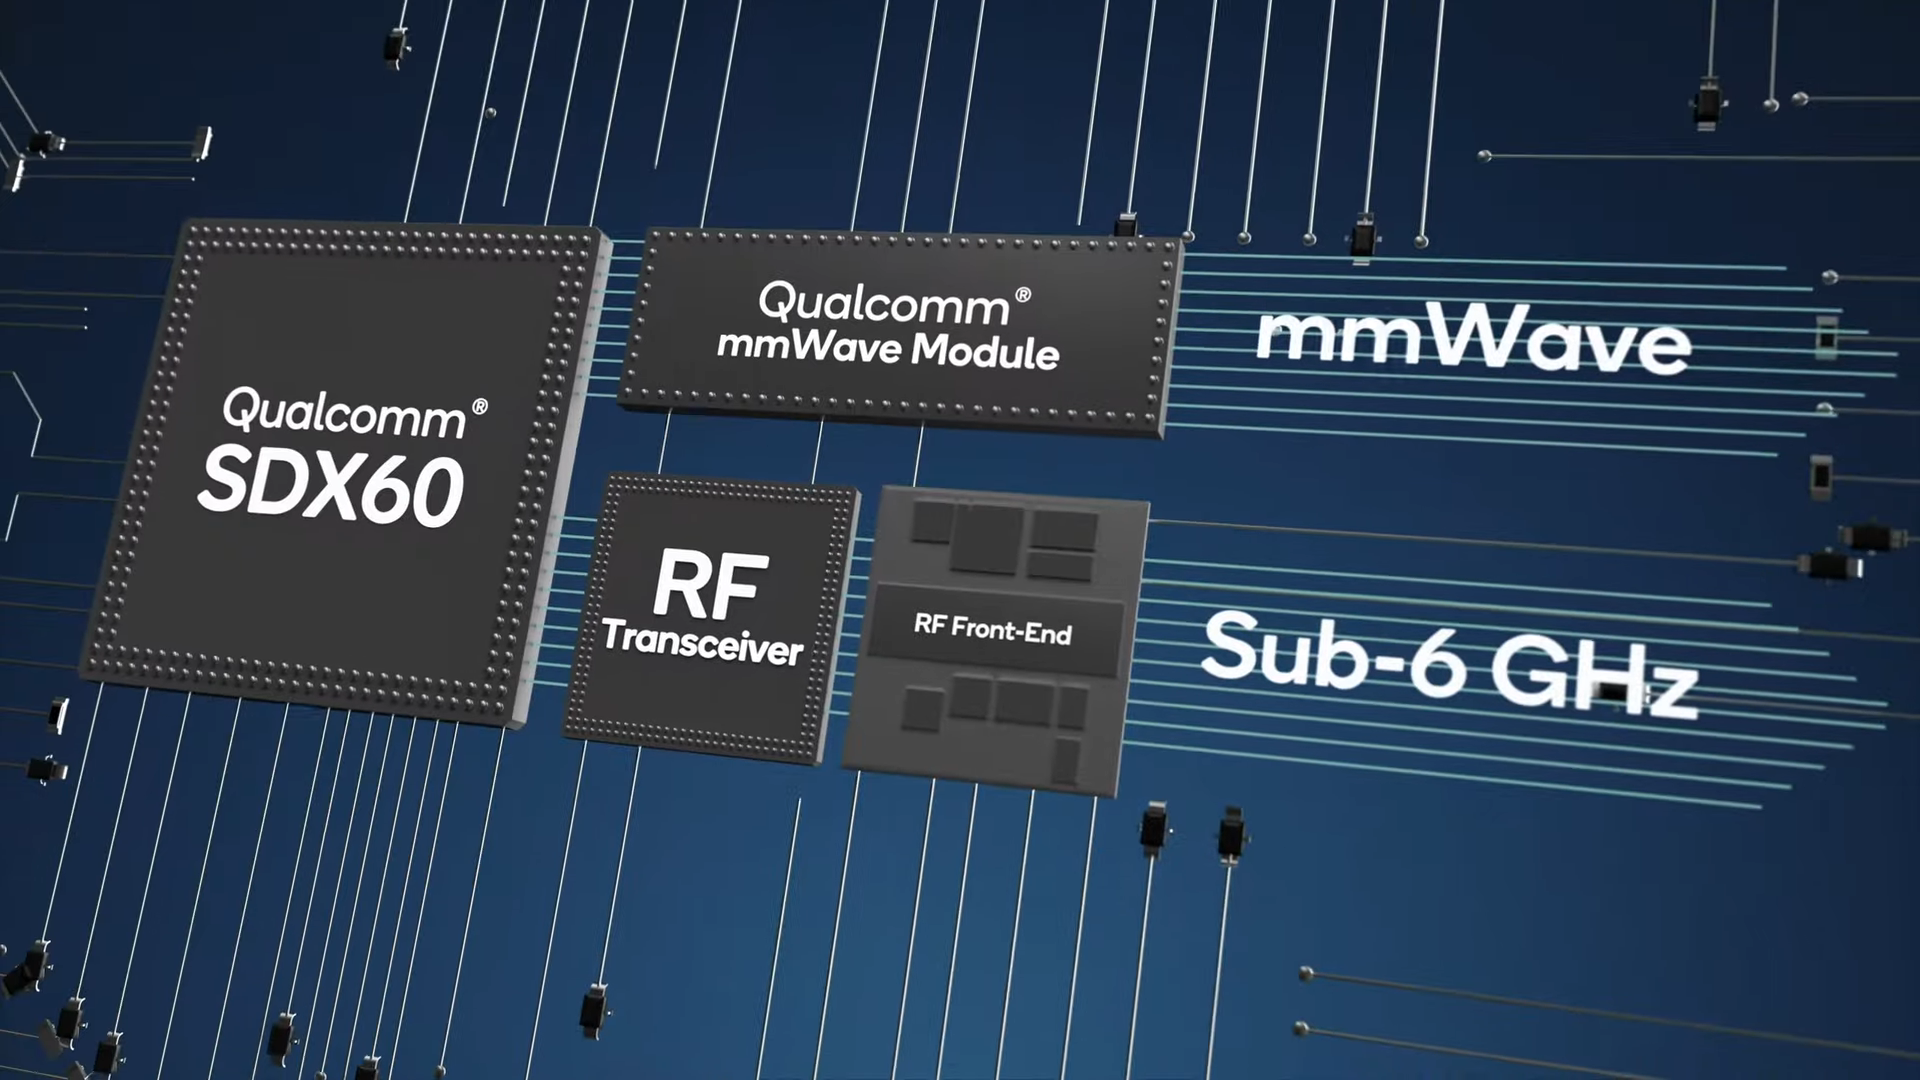 S-au anuntat specificatiile noului modem X60 5G de la Qualcomm